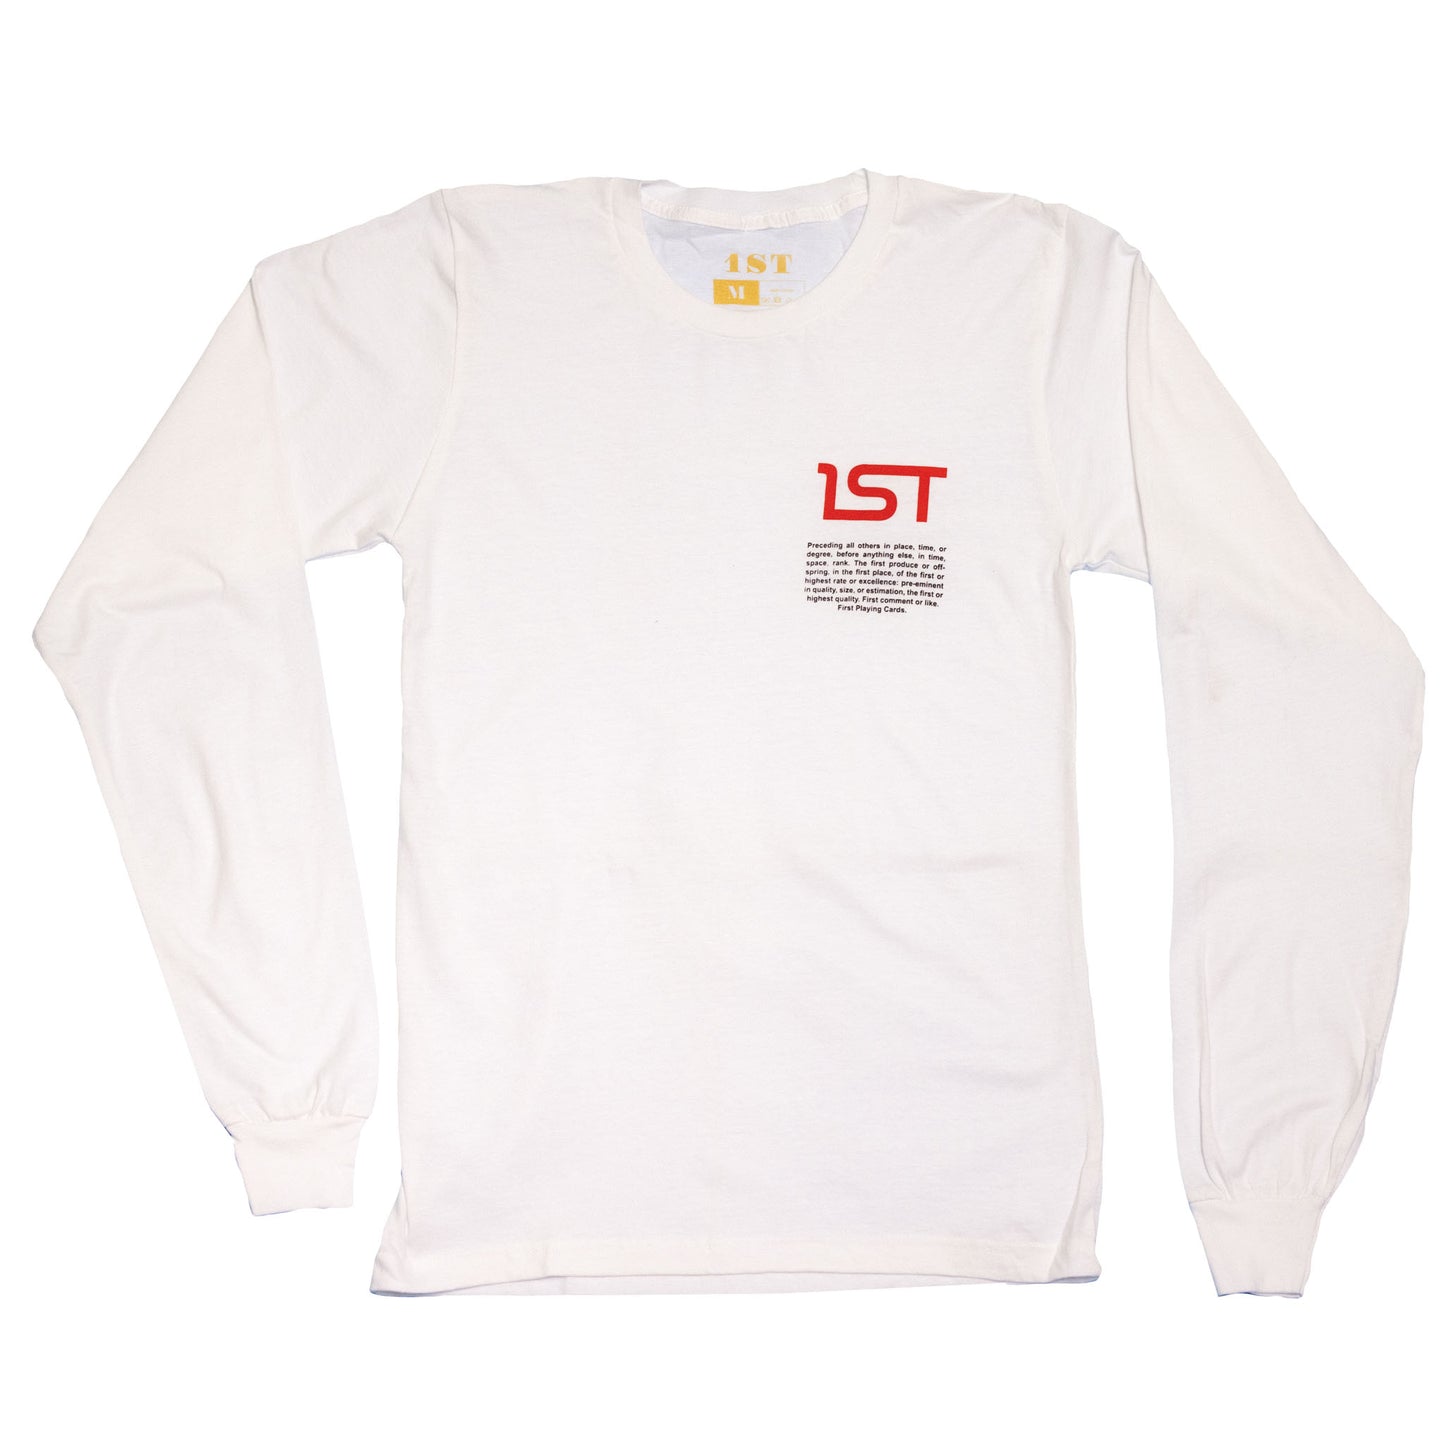 1ST White Long Sleeve T-Shirt